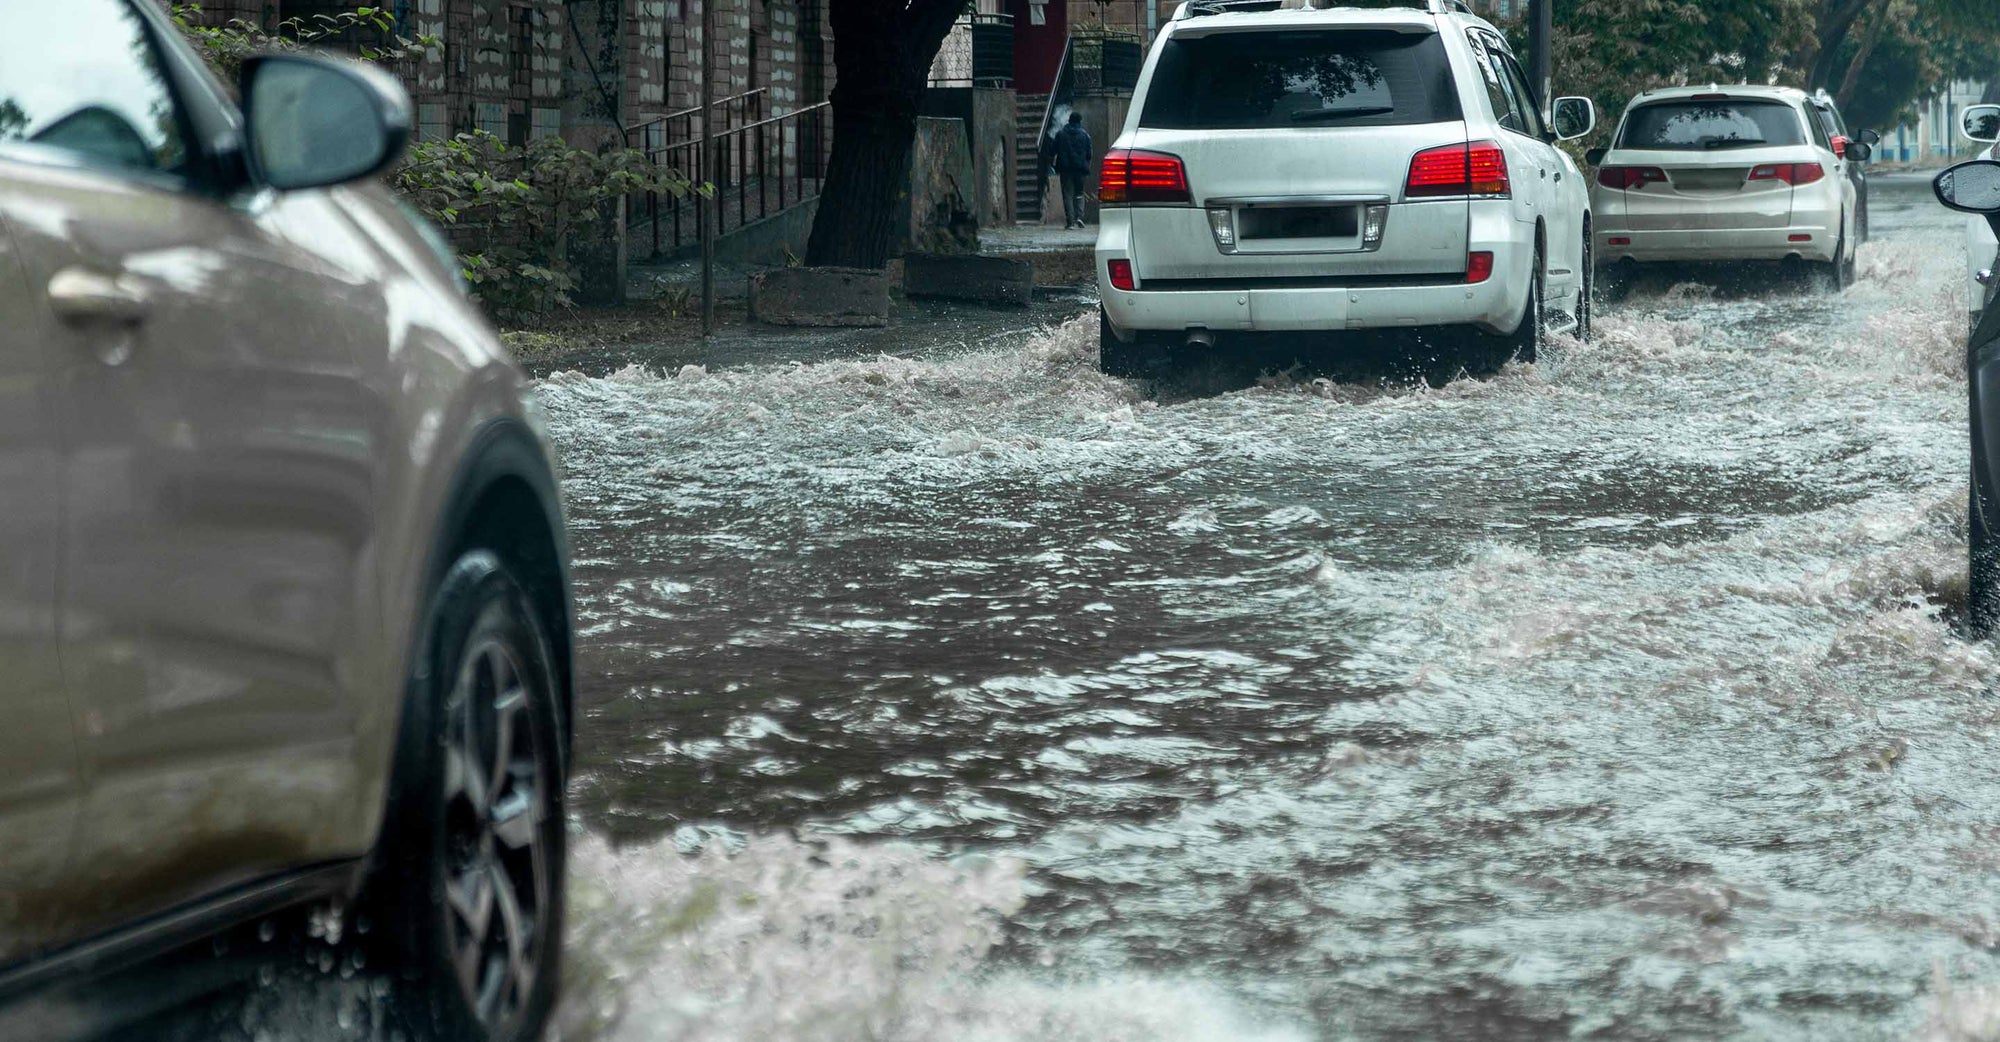 Flooded streets in Massachusetts.